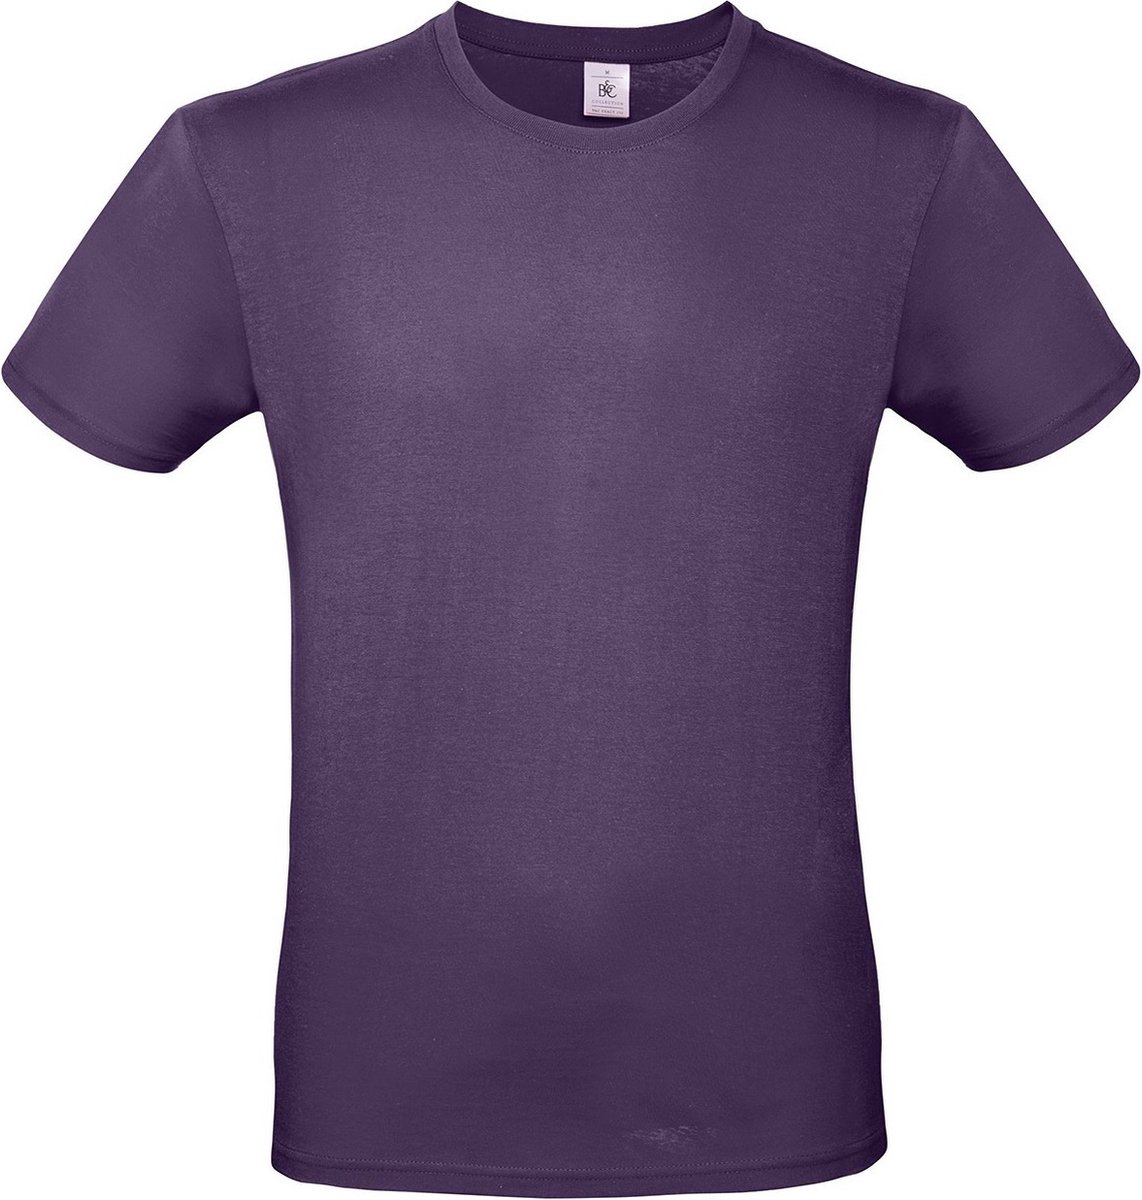 Paars basic t-shirt met ronde hals voor heren - katoen - 145 grams - paarse shirts / kleding S (48)